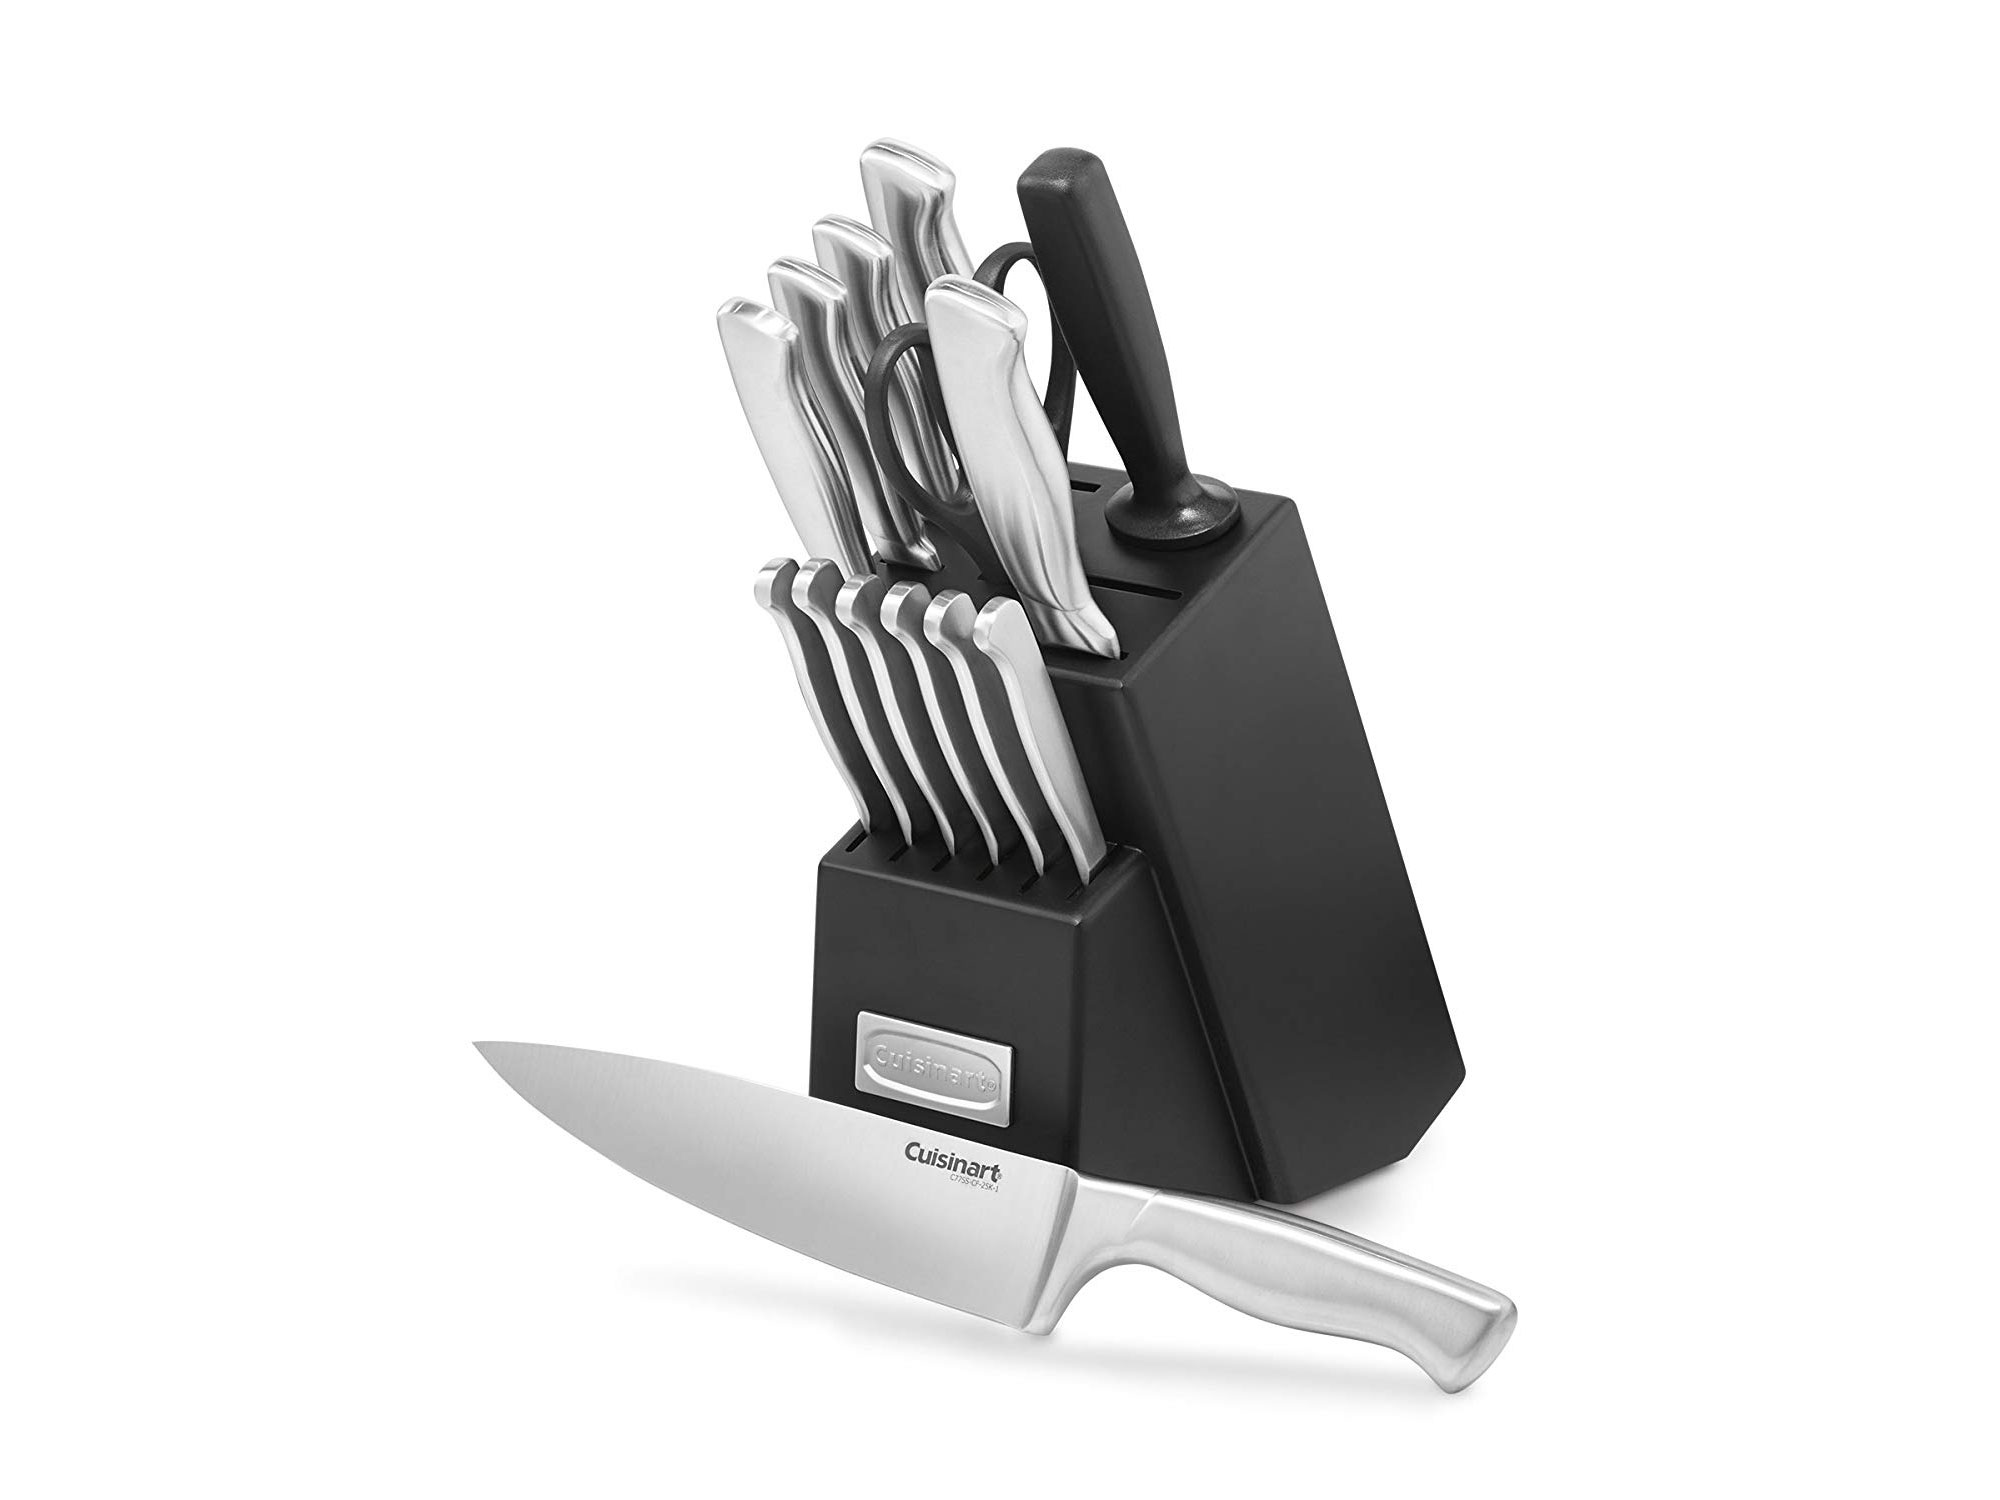 Cuisinart steel knife set